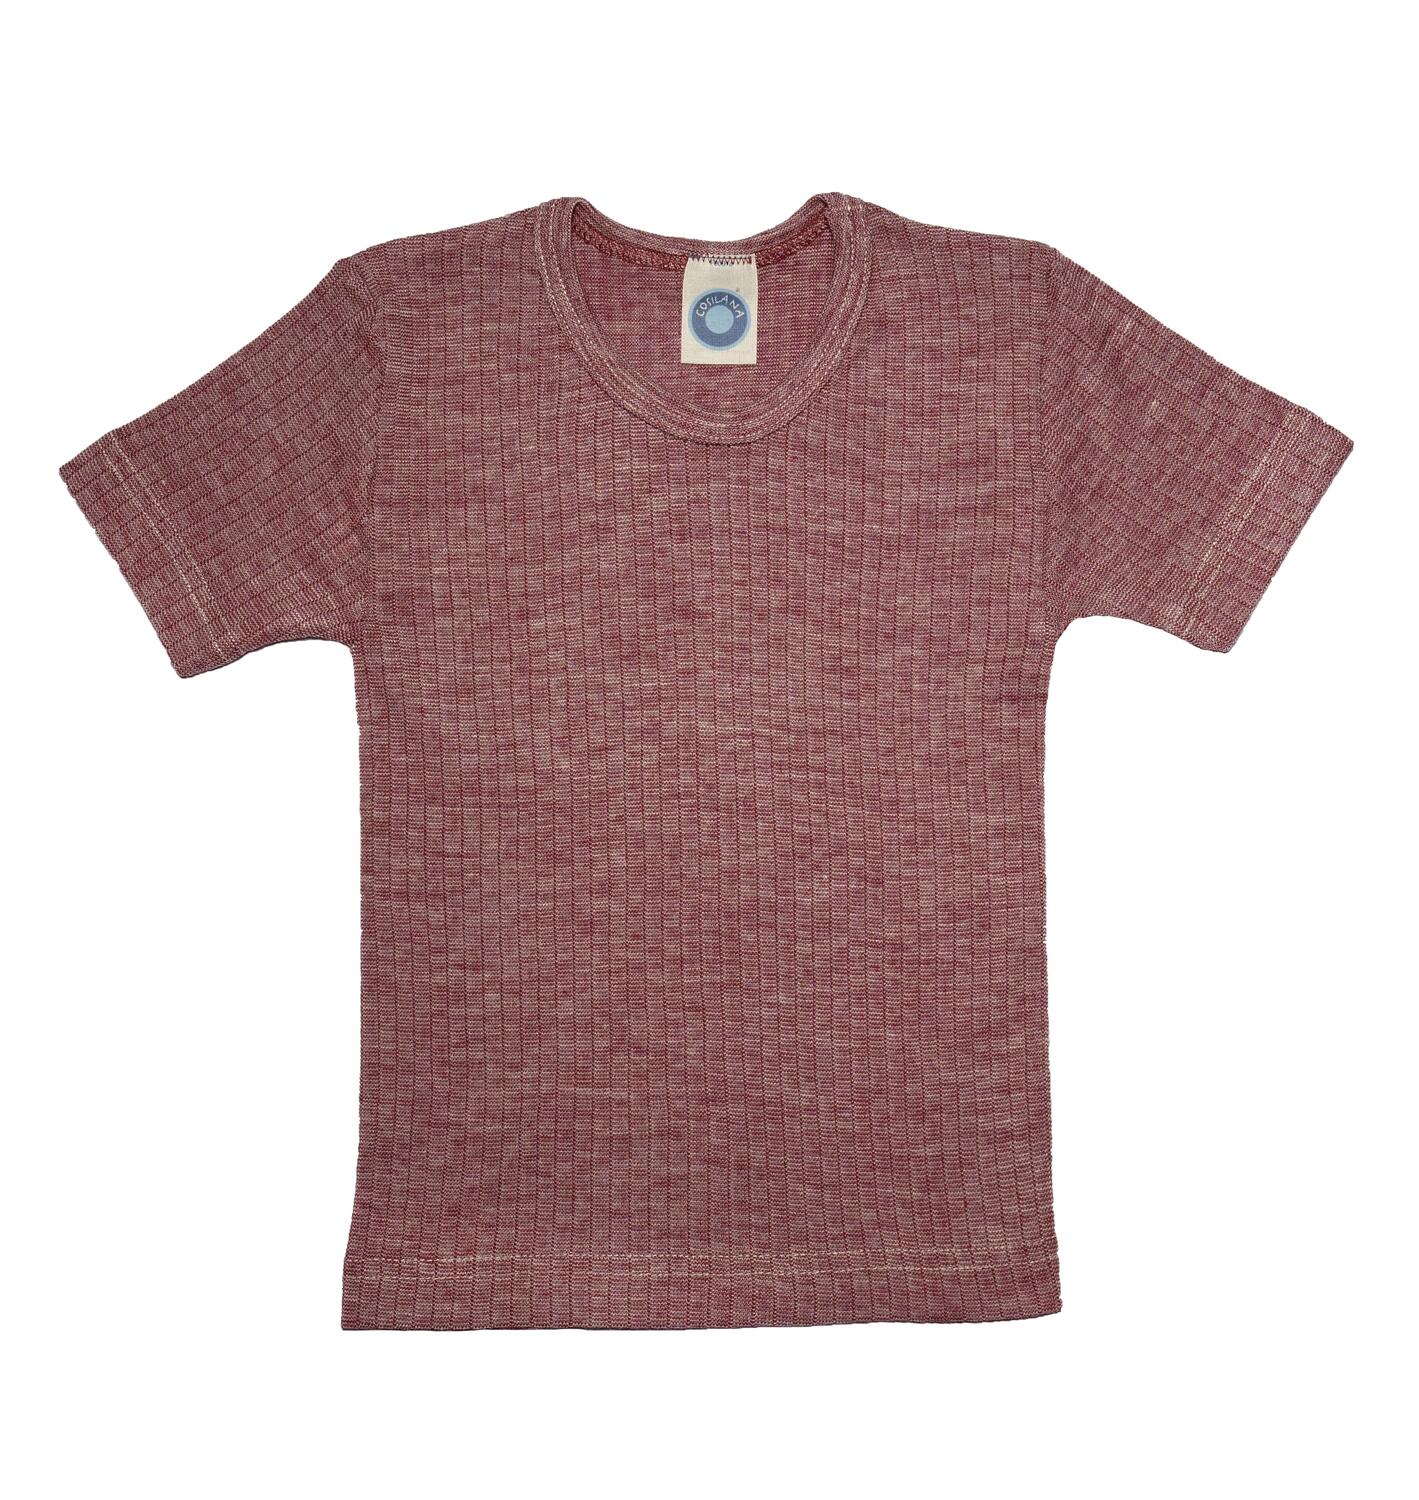 Cosilana Kinder-Unterhemd (Kurzarm) aus Baumwolle/Wolle/Seide